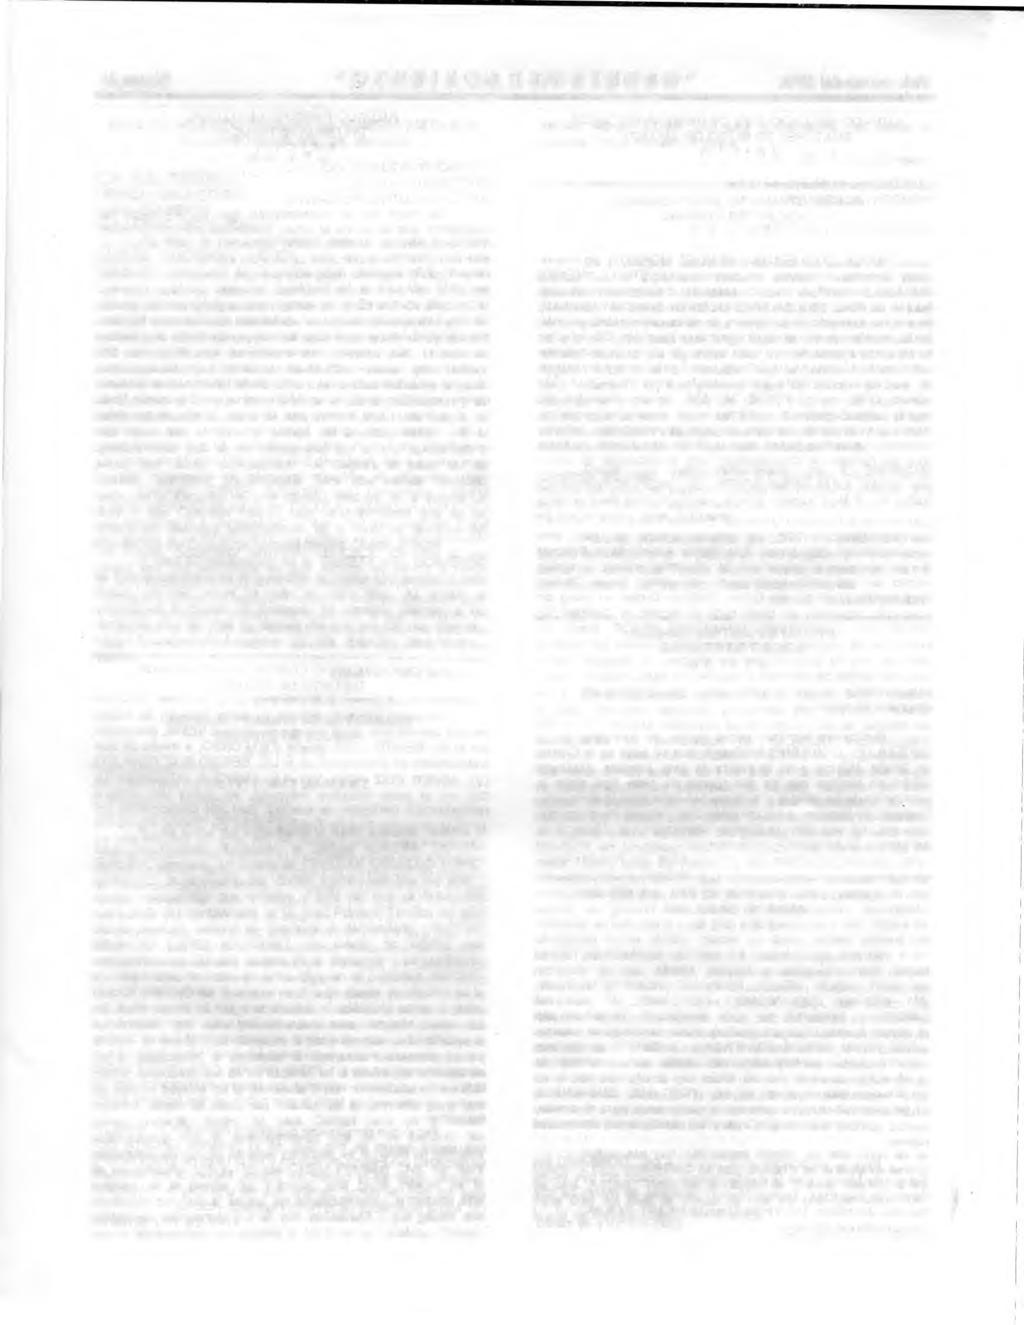 Página 22 "GACETA DEL GOBIERNO" 30 de marzo del 2001 JUZGADO SEGUNDO FAMILIAR DE PRIMERA INSTANCIA ECATEPEC DE MORELOS, MEXICO EXP. NUM: 739/2001-1. PRIMERA SECRETARIA. EMPLAZAMIENTO.